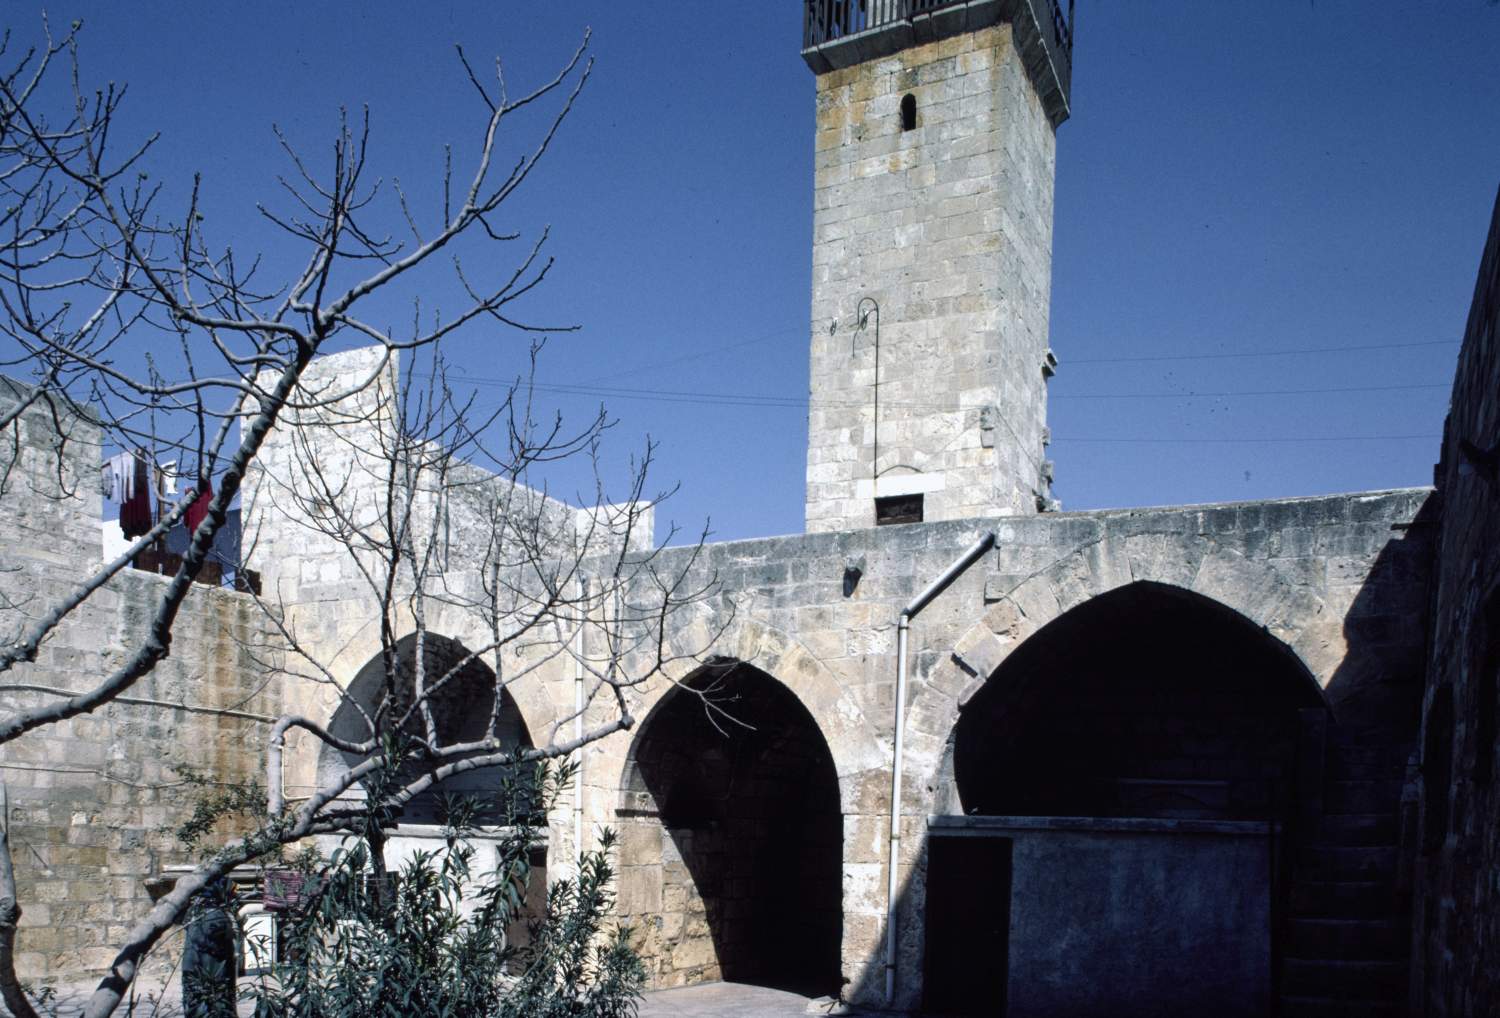 View of courtyard, facing minaret.